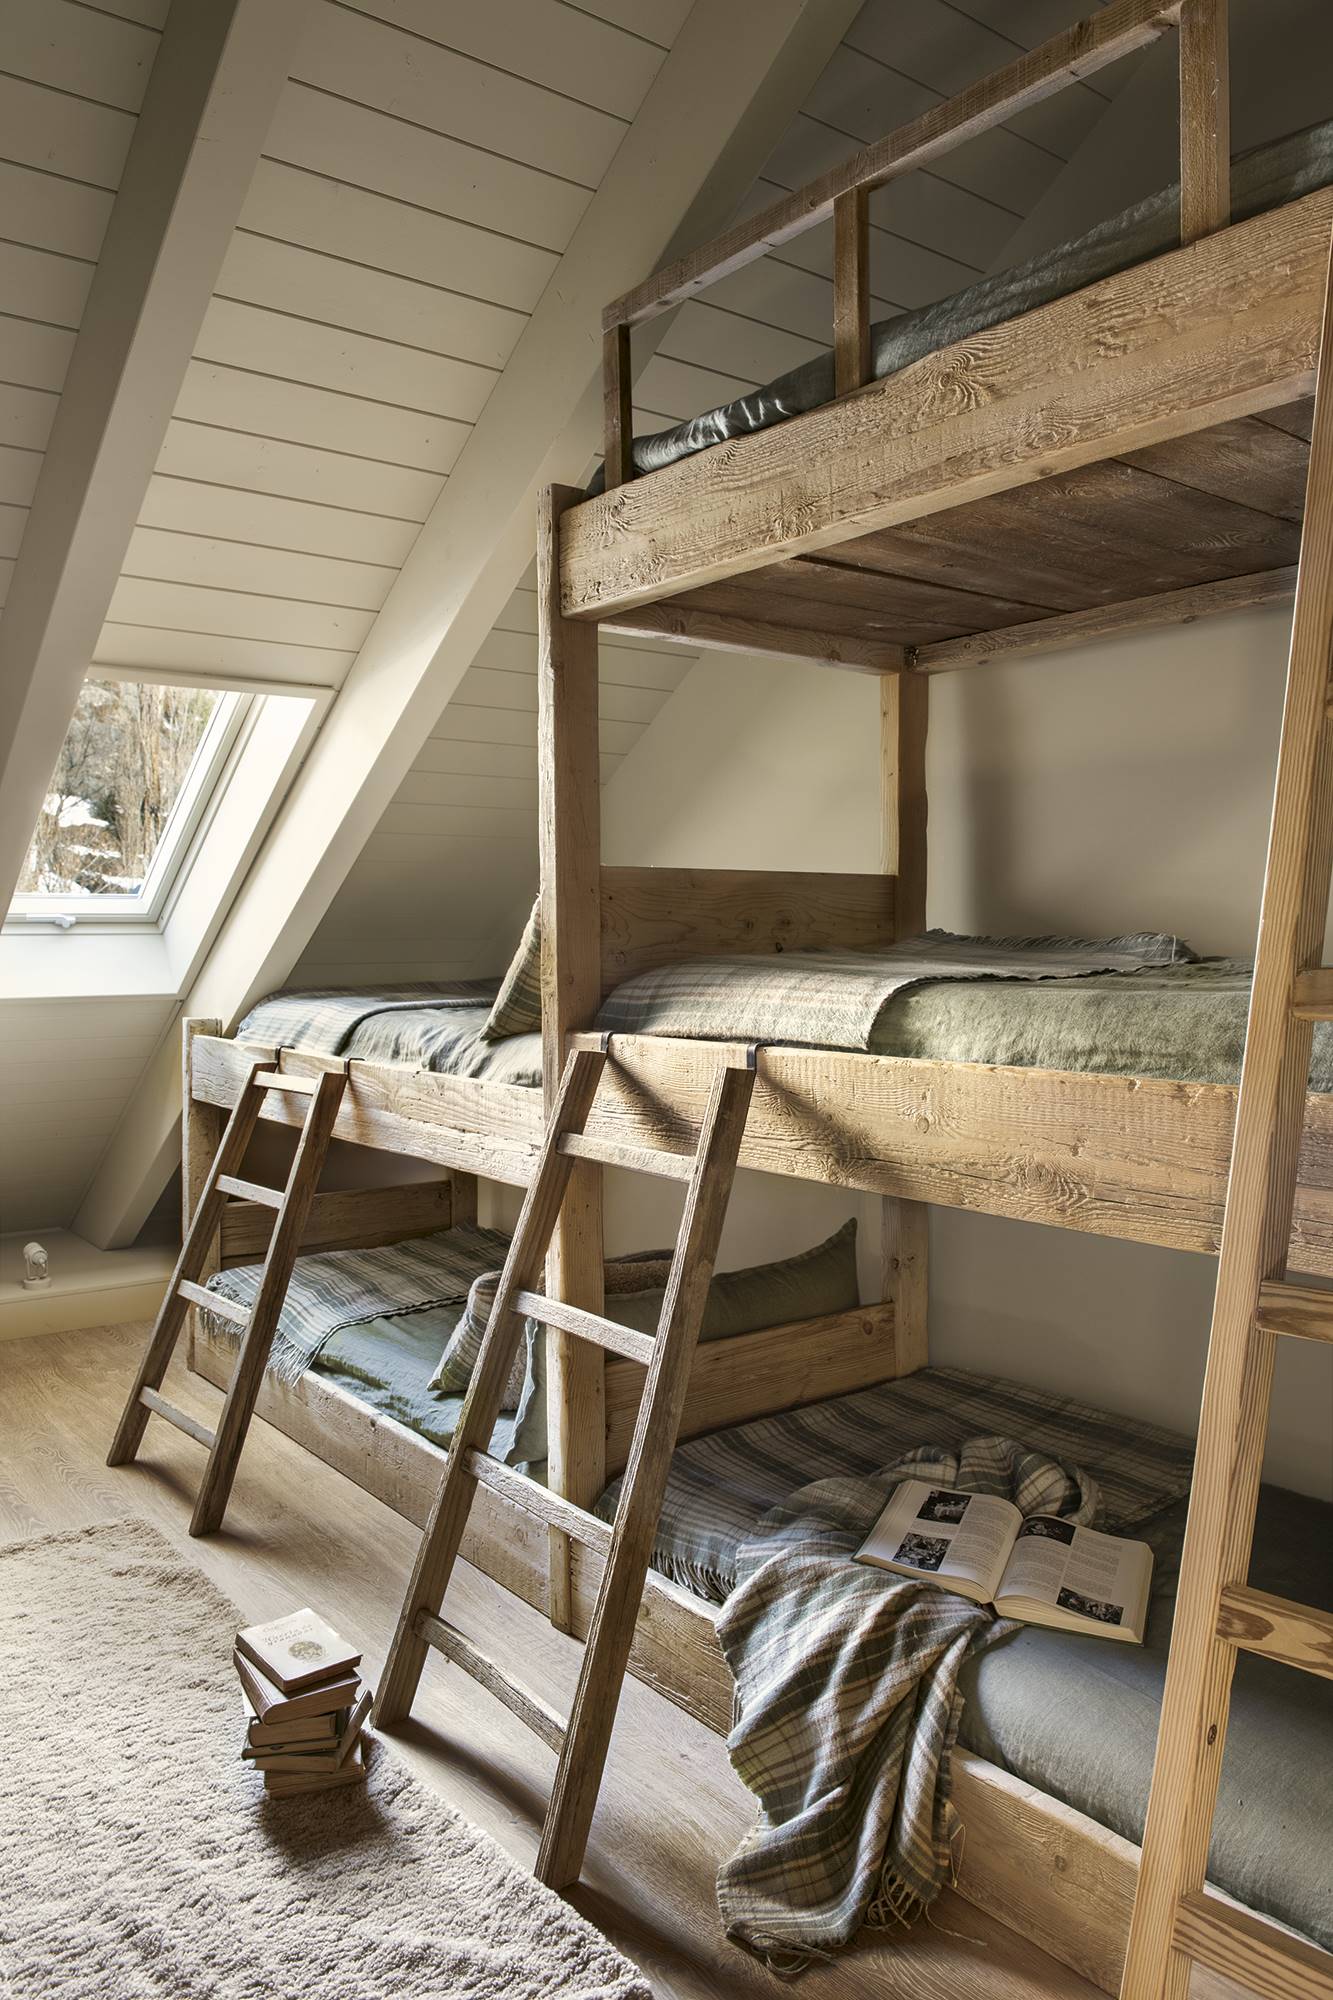 Dormitorio infantil de estilo rústico con literas hechas de madera.